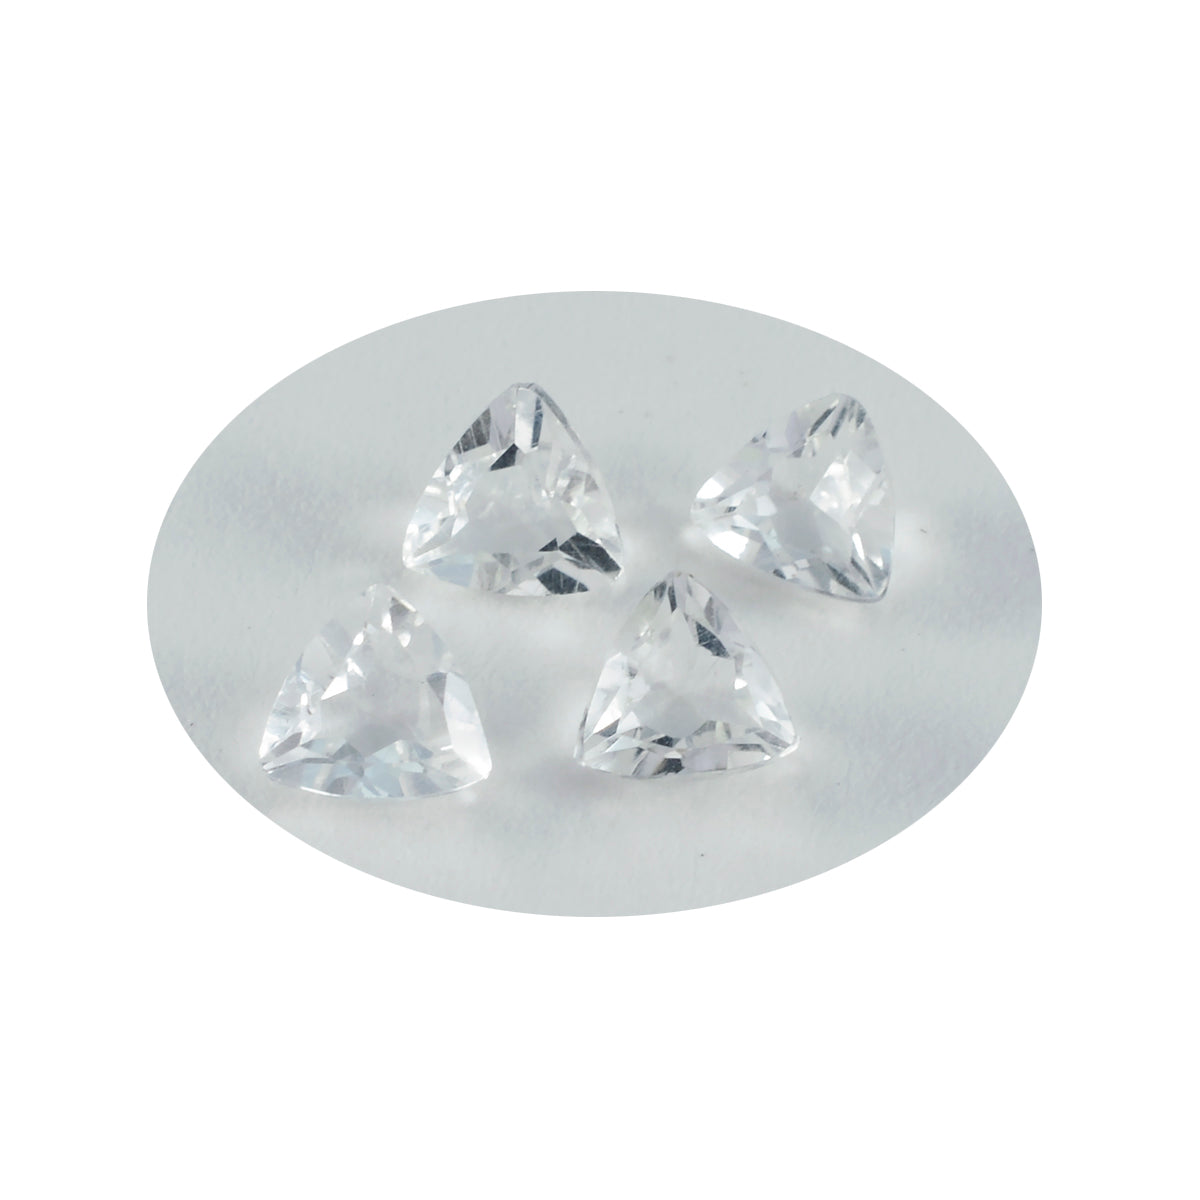 riyogems 1 шт., белый кристалл кварца, граненый 11x11 мм, форма триллиона, милый качественный свободный драгоценный камень